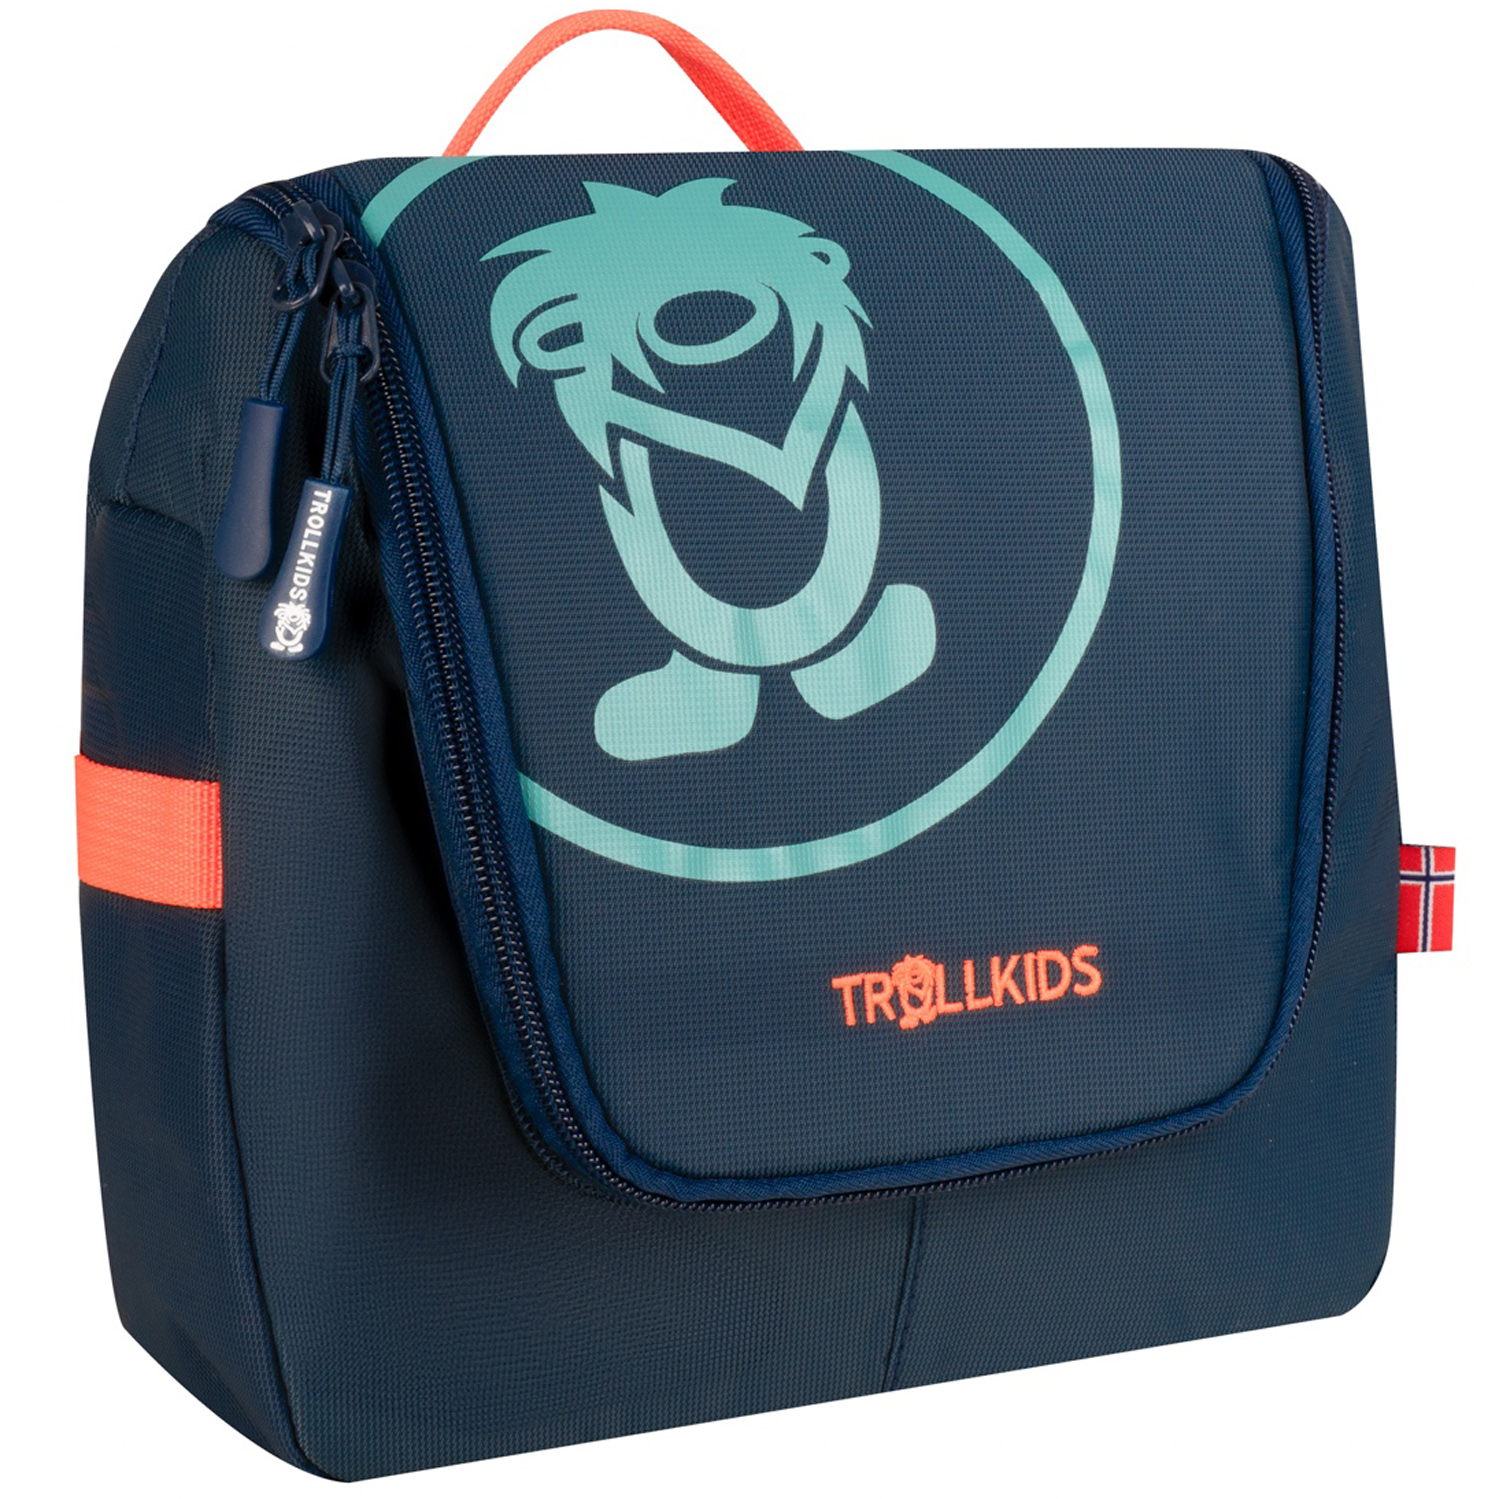 Produktbild von Trollkids Waschtasche 5L Kinder - navy/glow orange/dusky turquoise